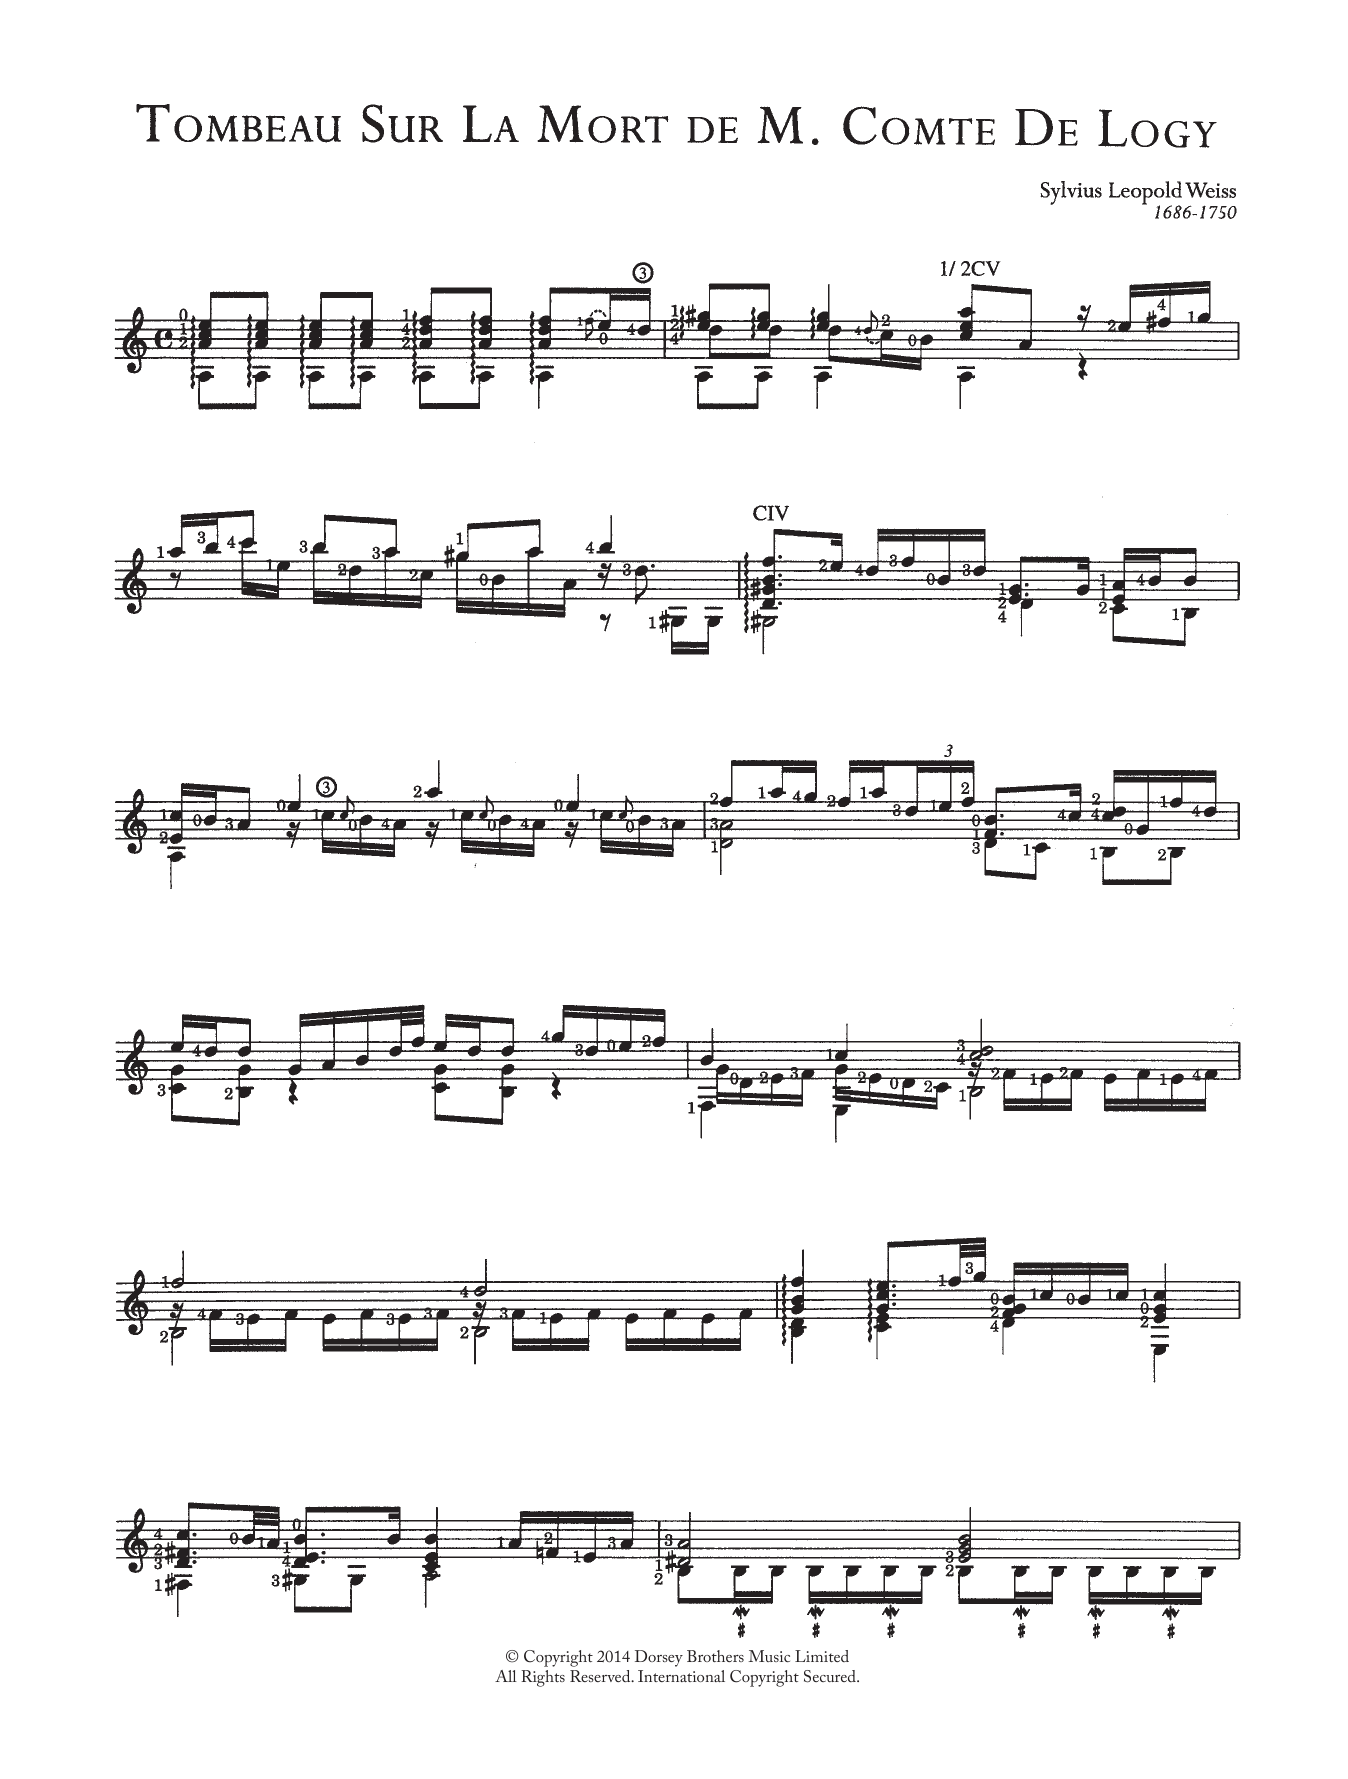 Sylvius Leopold Weiss Tombeau Sur La Mort De M. Comte De Logy Sheet Music Notes & Chords for Guitar - Download or Print PDF